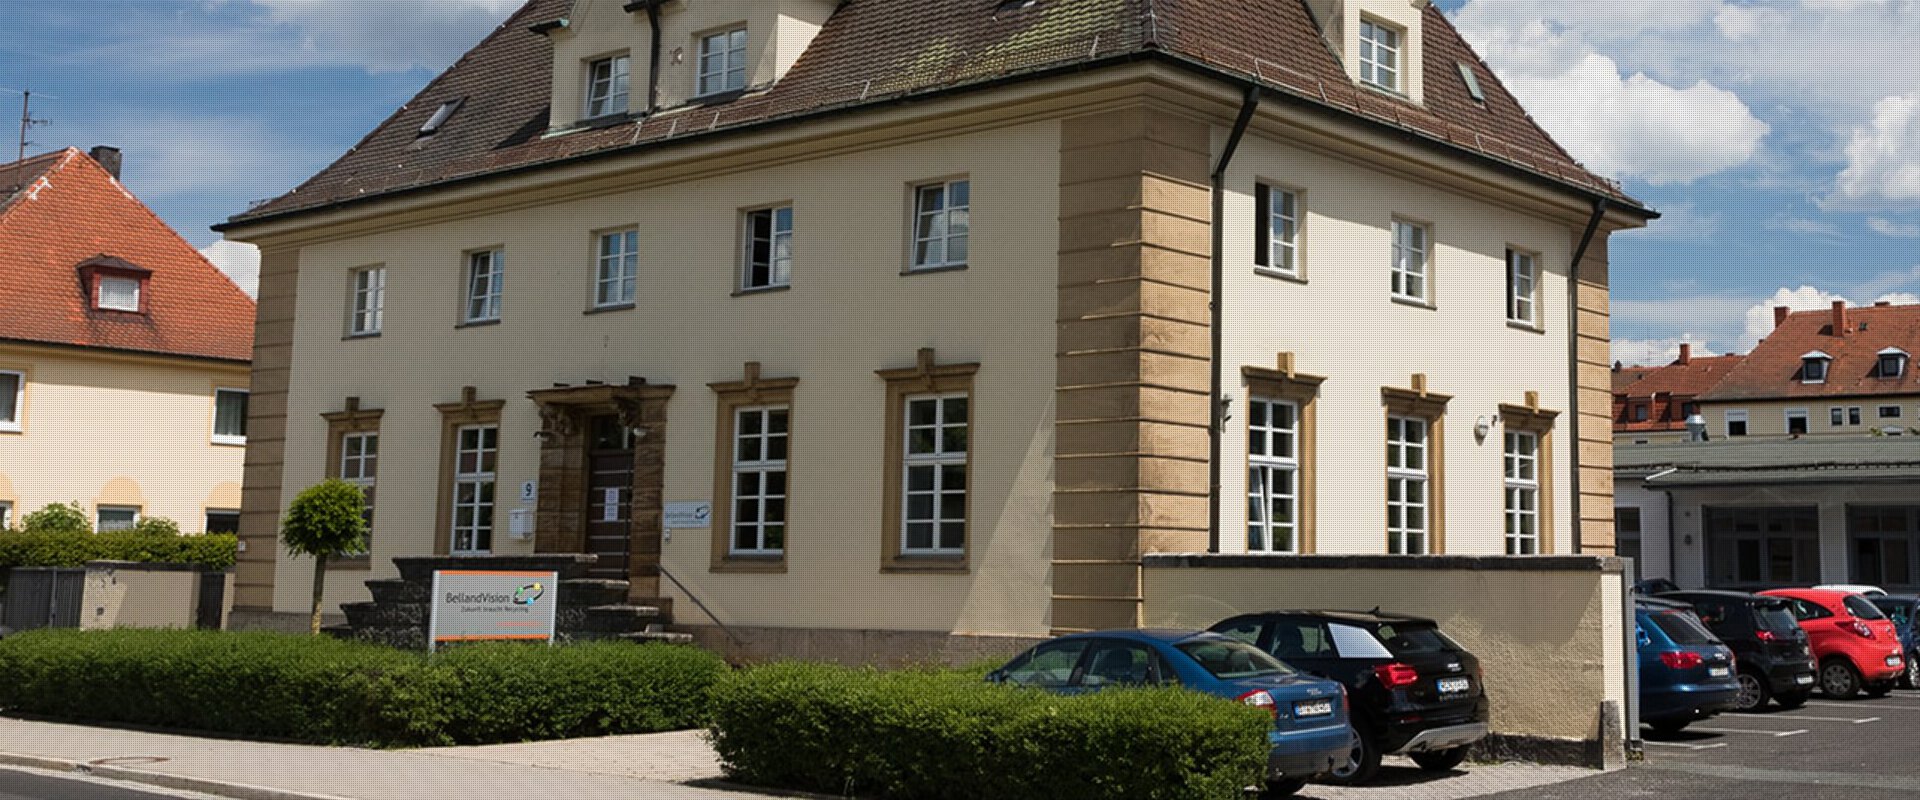 Ein historisches, zweistöckiges, sandfarbenes Gebäude mit einem dunklen Dach und heller Umrandung der Fenster zeigt den Unternehmensstandort von BellandVision in Pegnitz. 